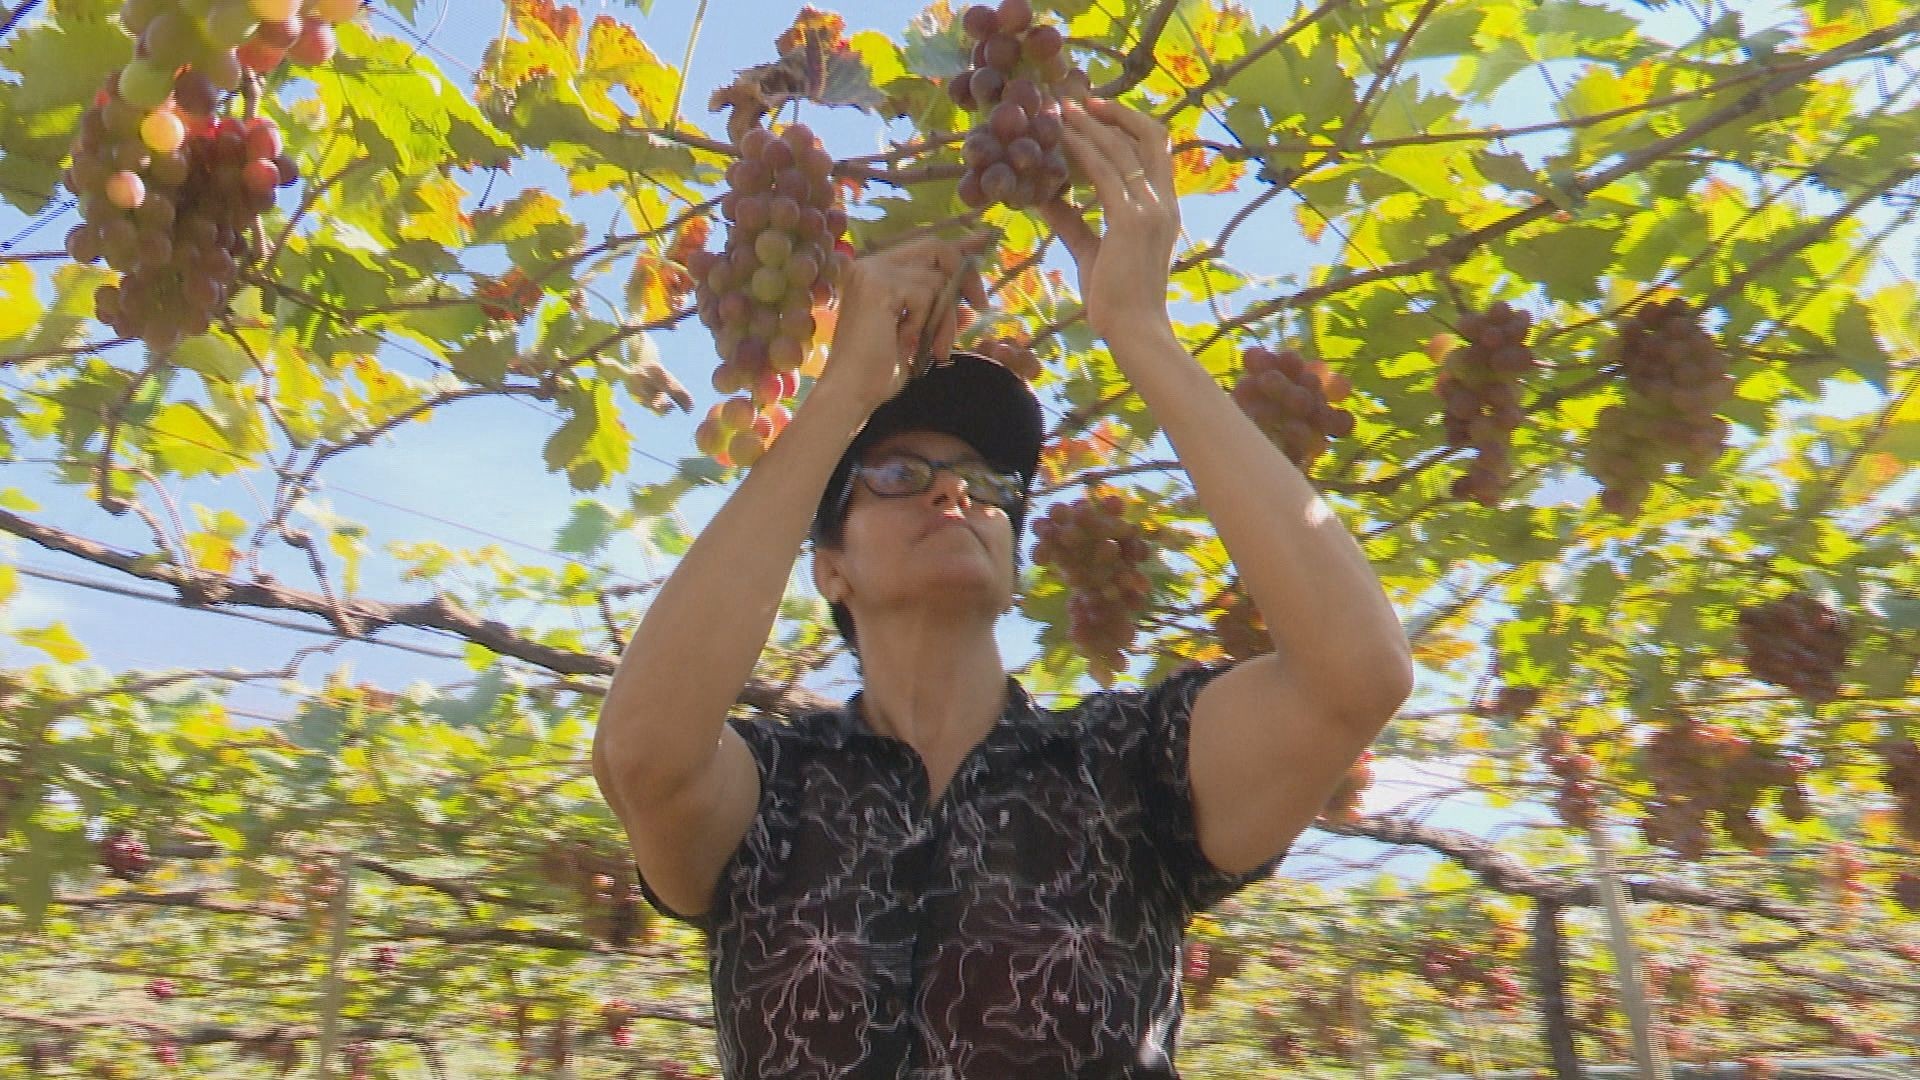 Em Marialva, maior cidade produtora de uva do PR, mais de 500 mulheres lideram parreirais